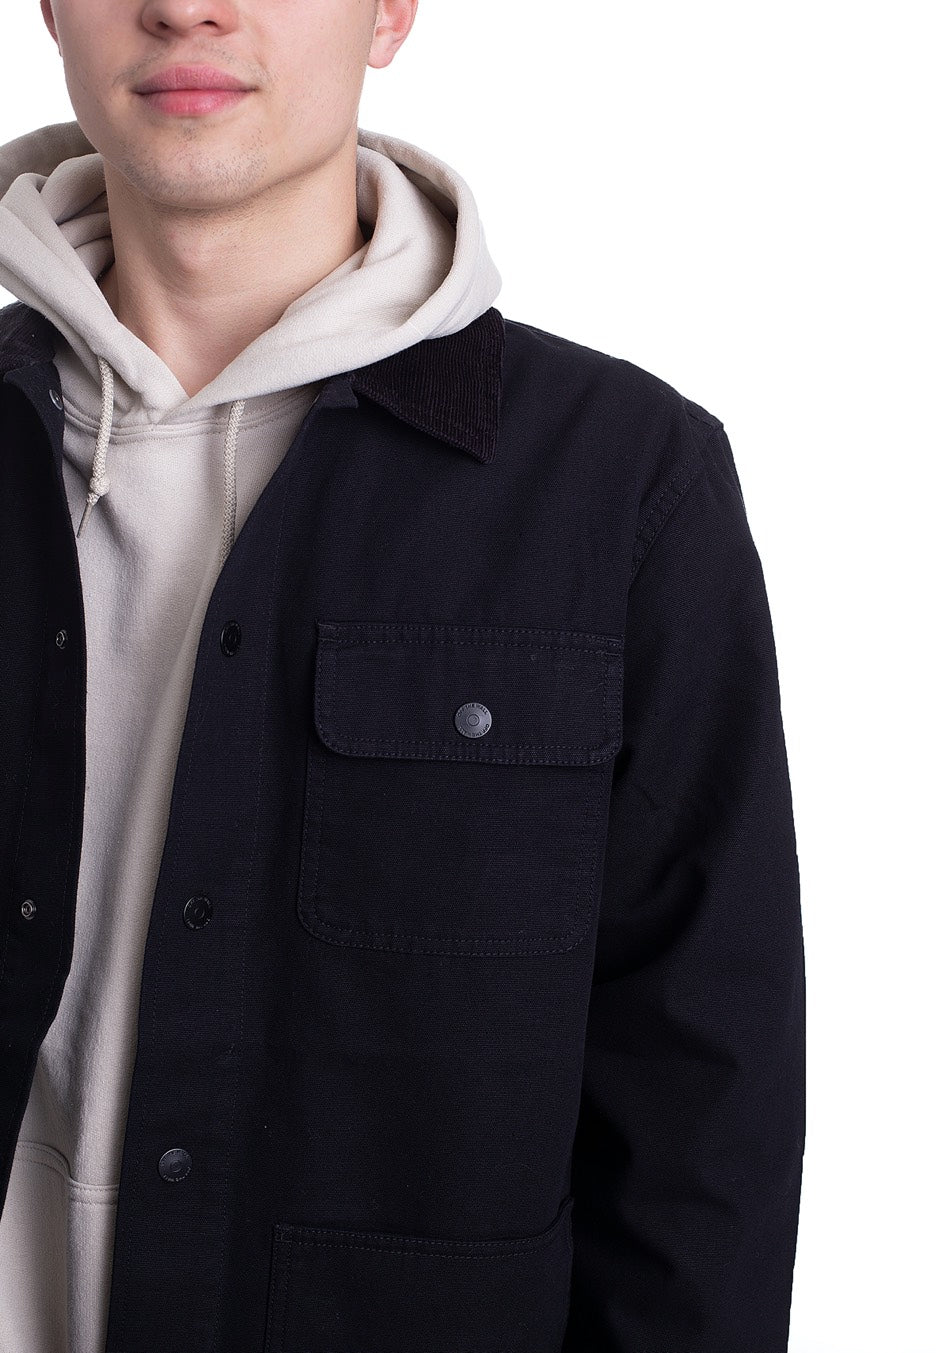 Vans - Drill Chore Coat Black - Jacket